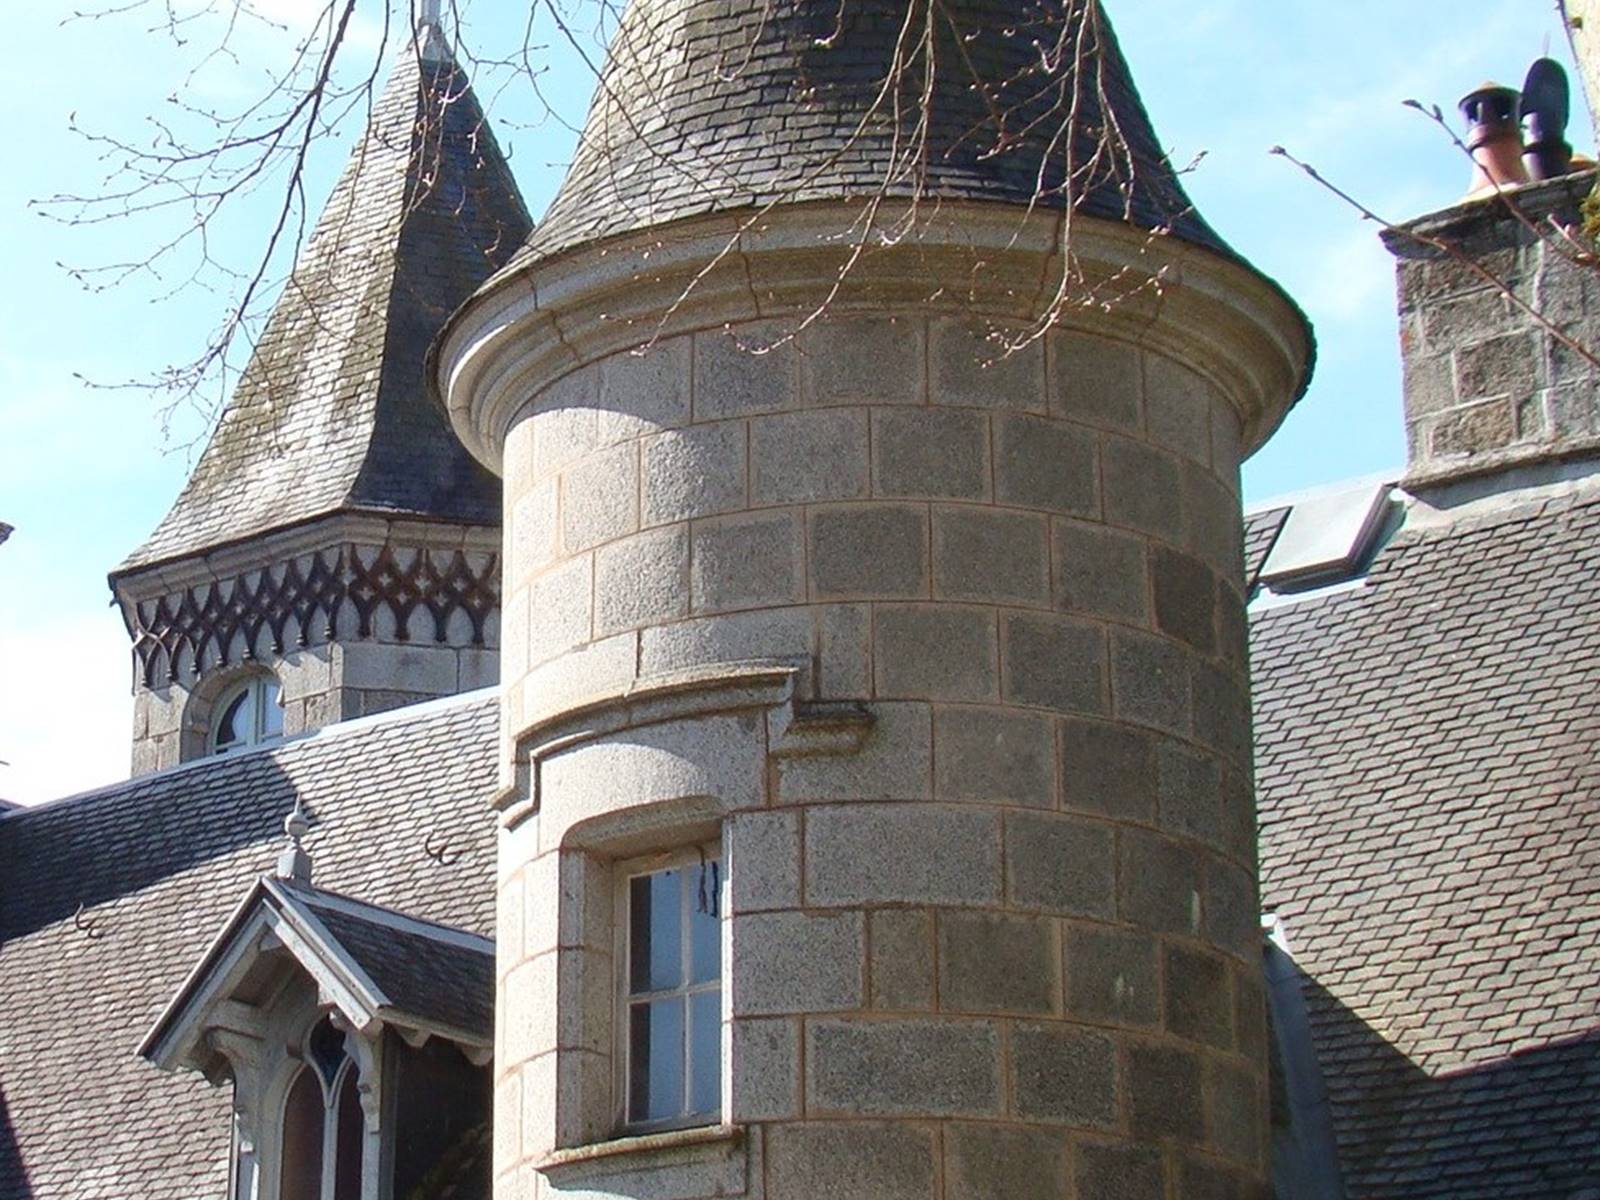 Château de Crocq, côté parc.